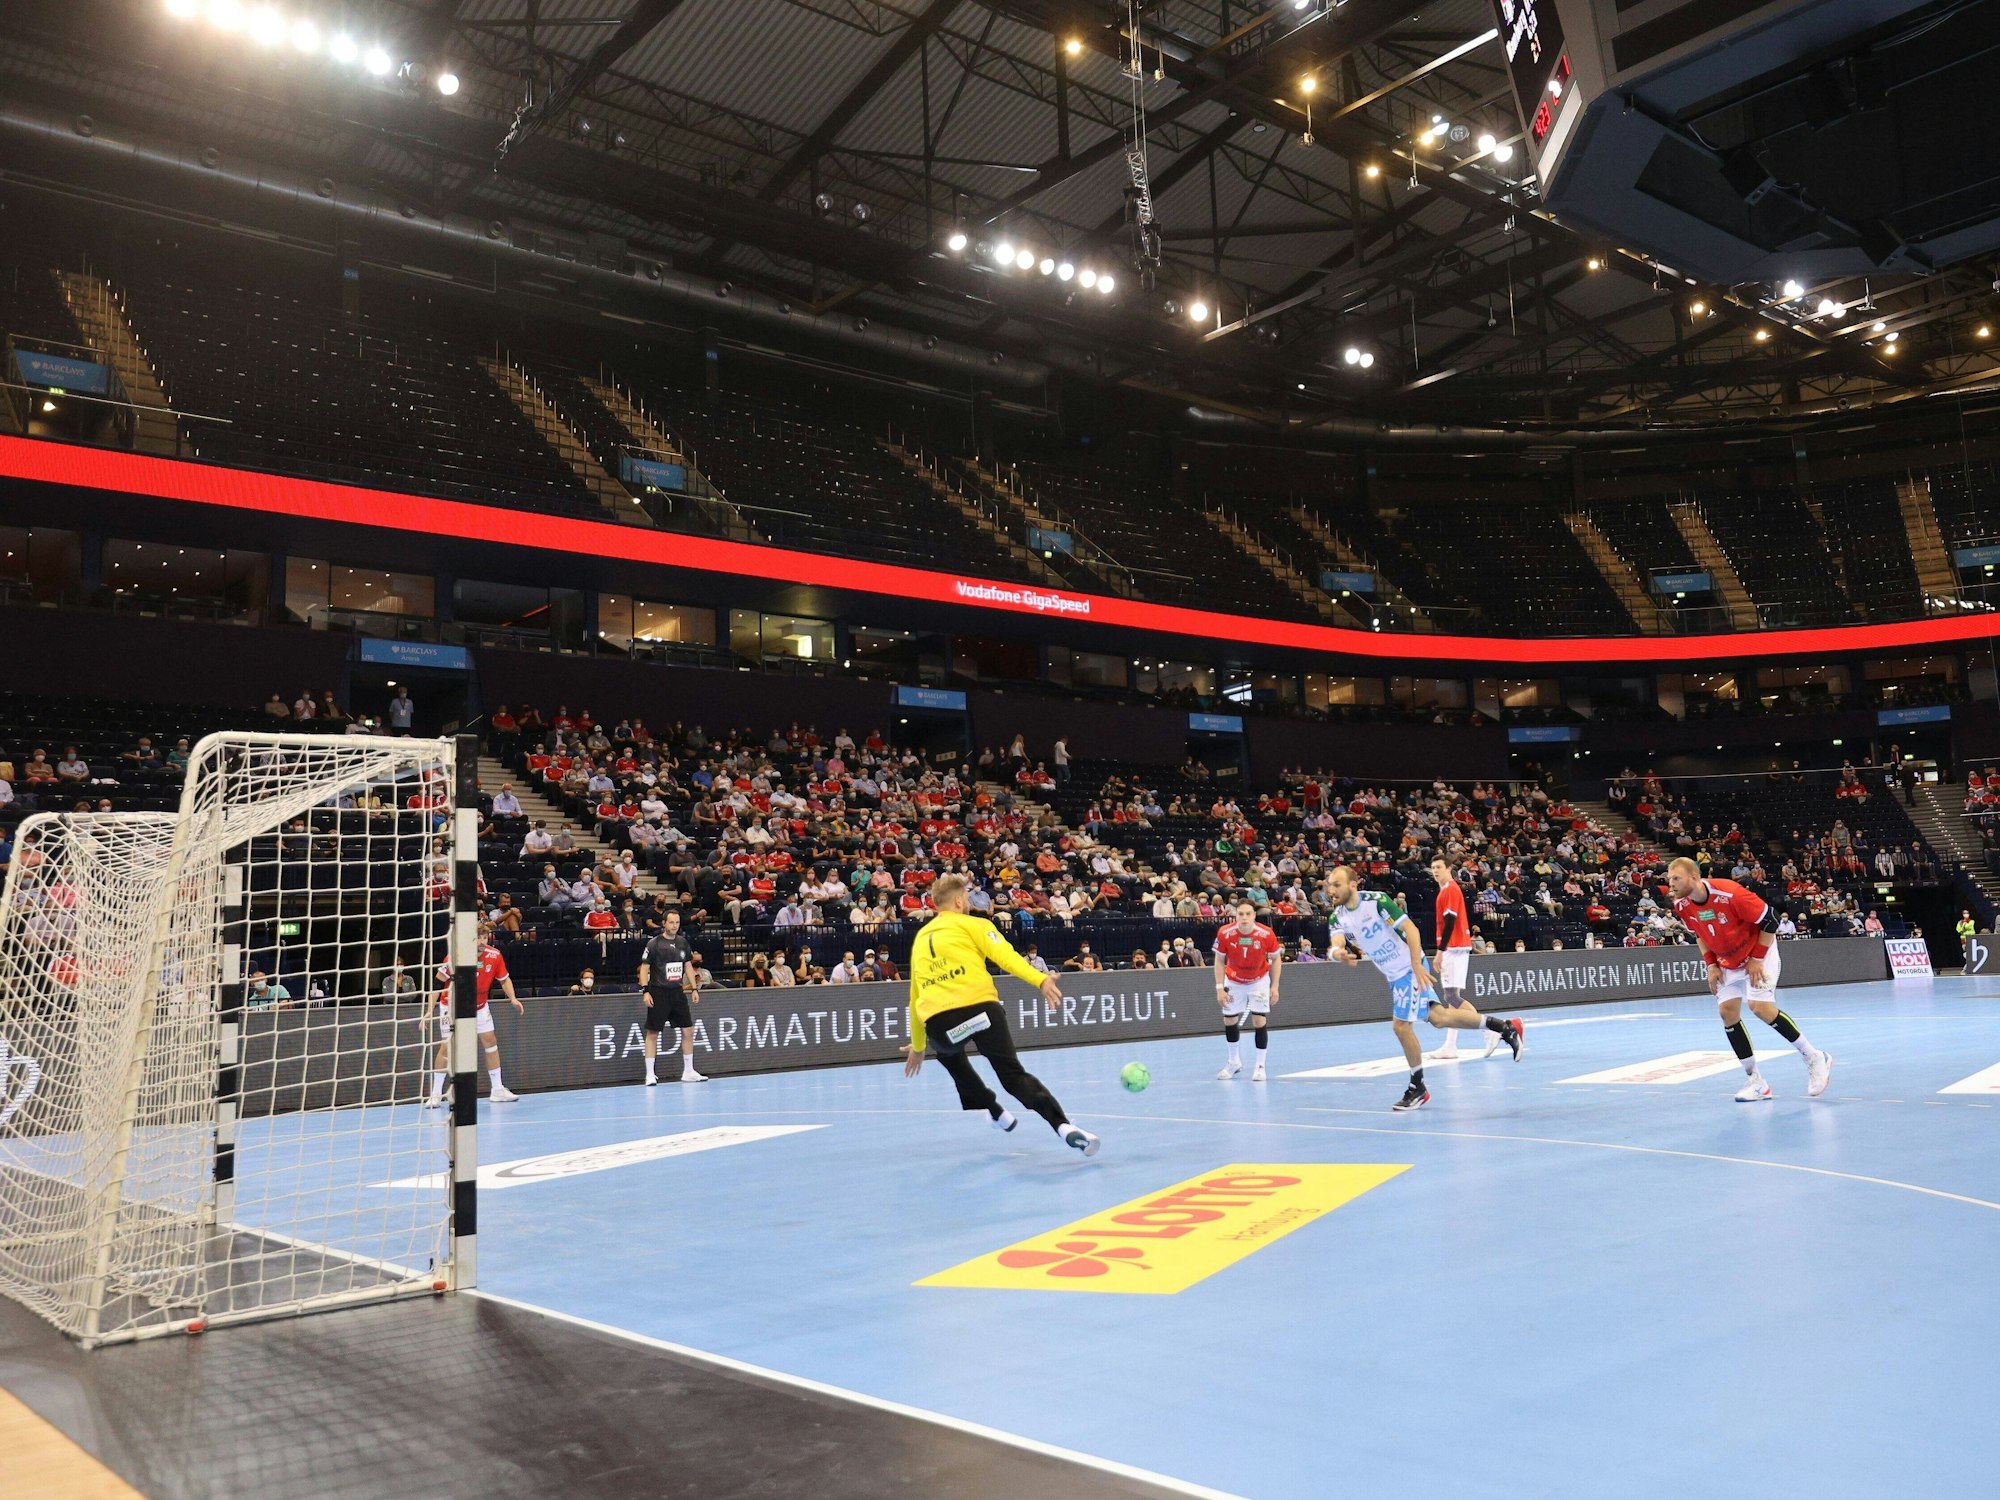 Handballspieler laufen auf dem Spielfeld der Barclays Arena in Hamburg (2021).